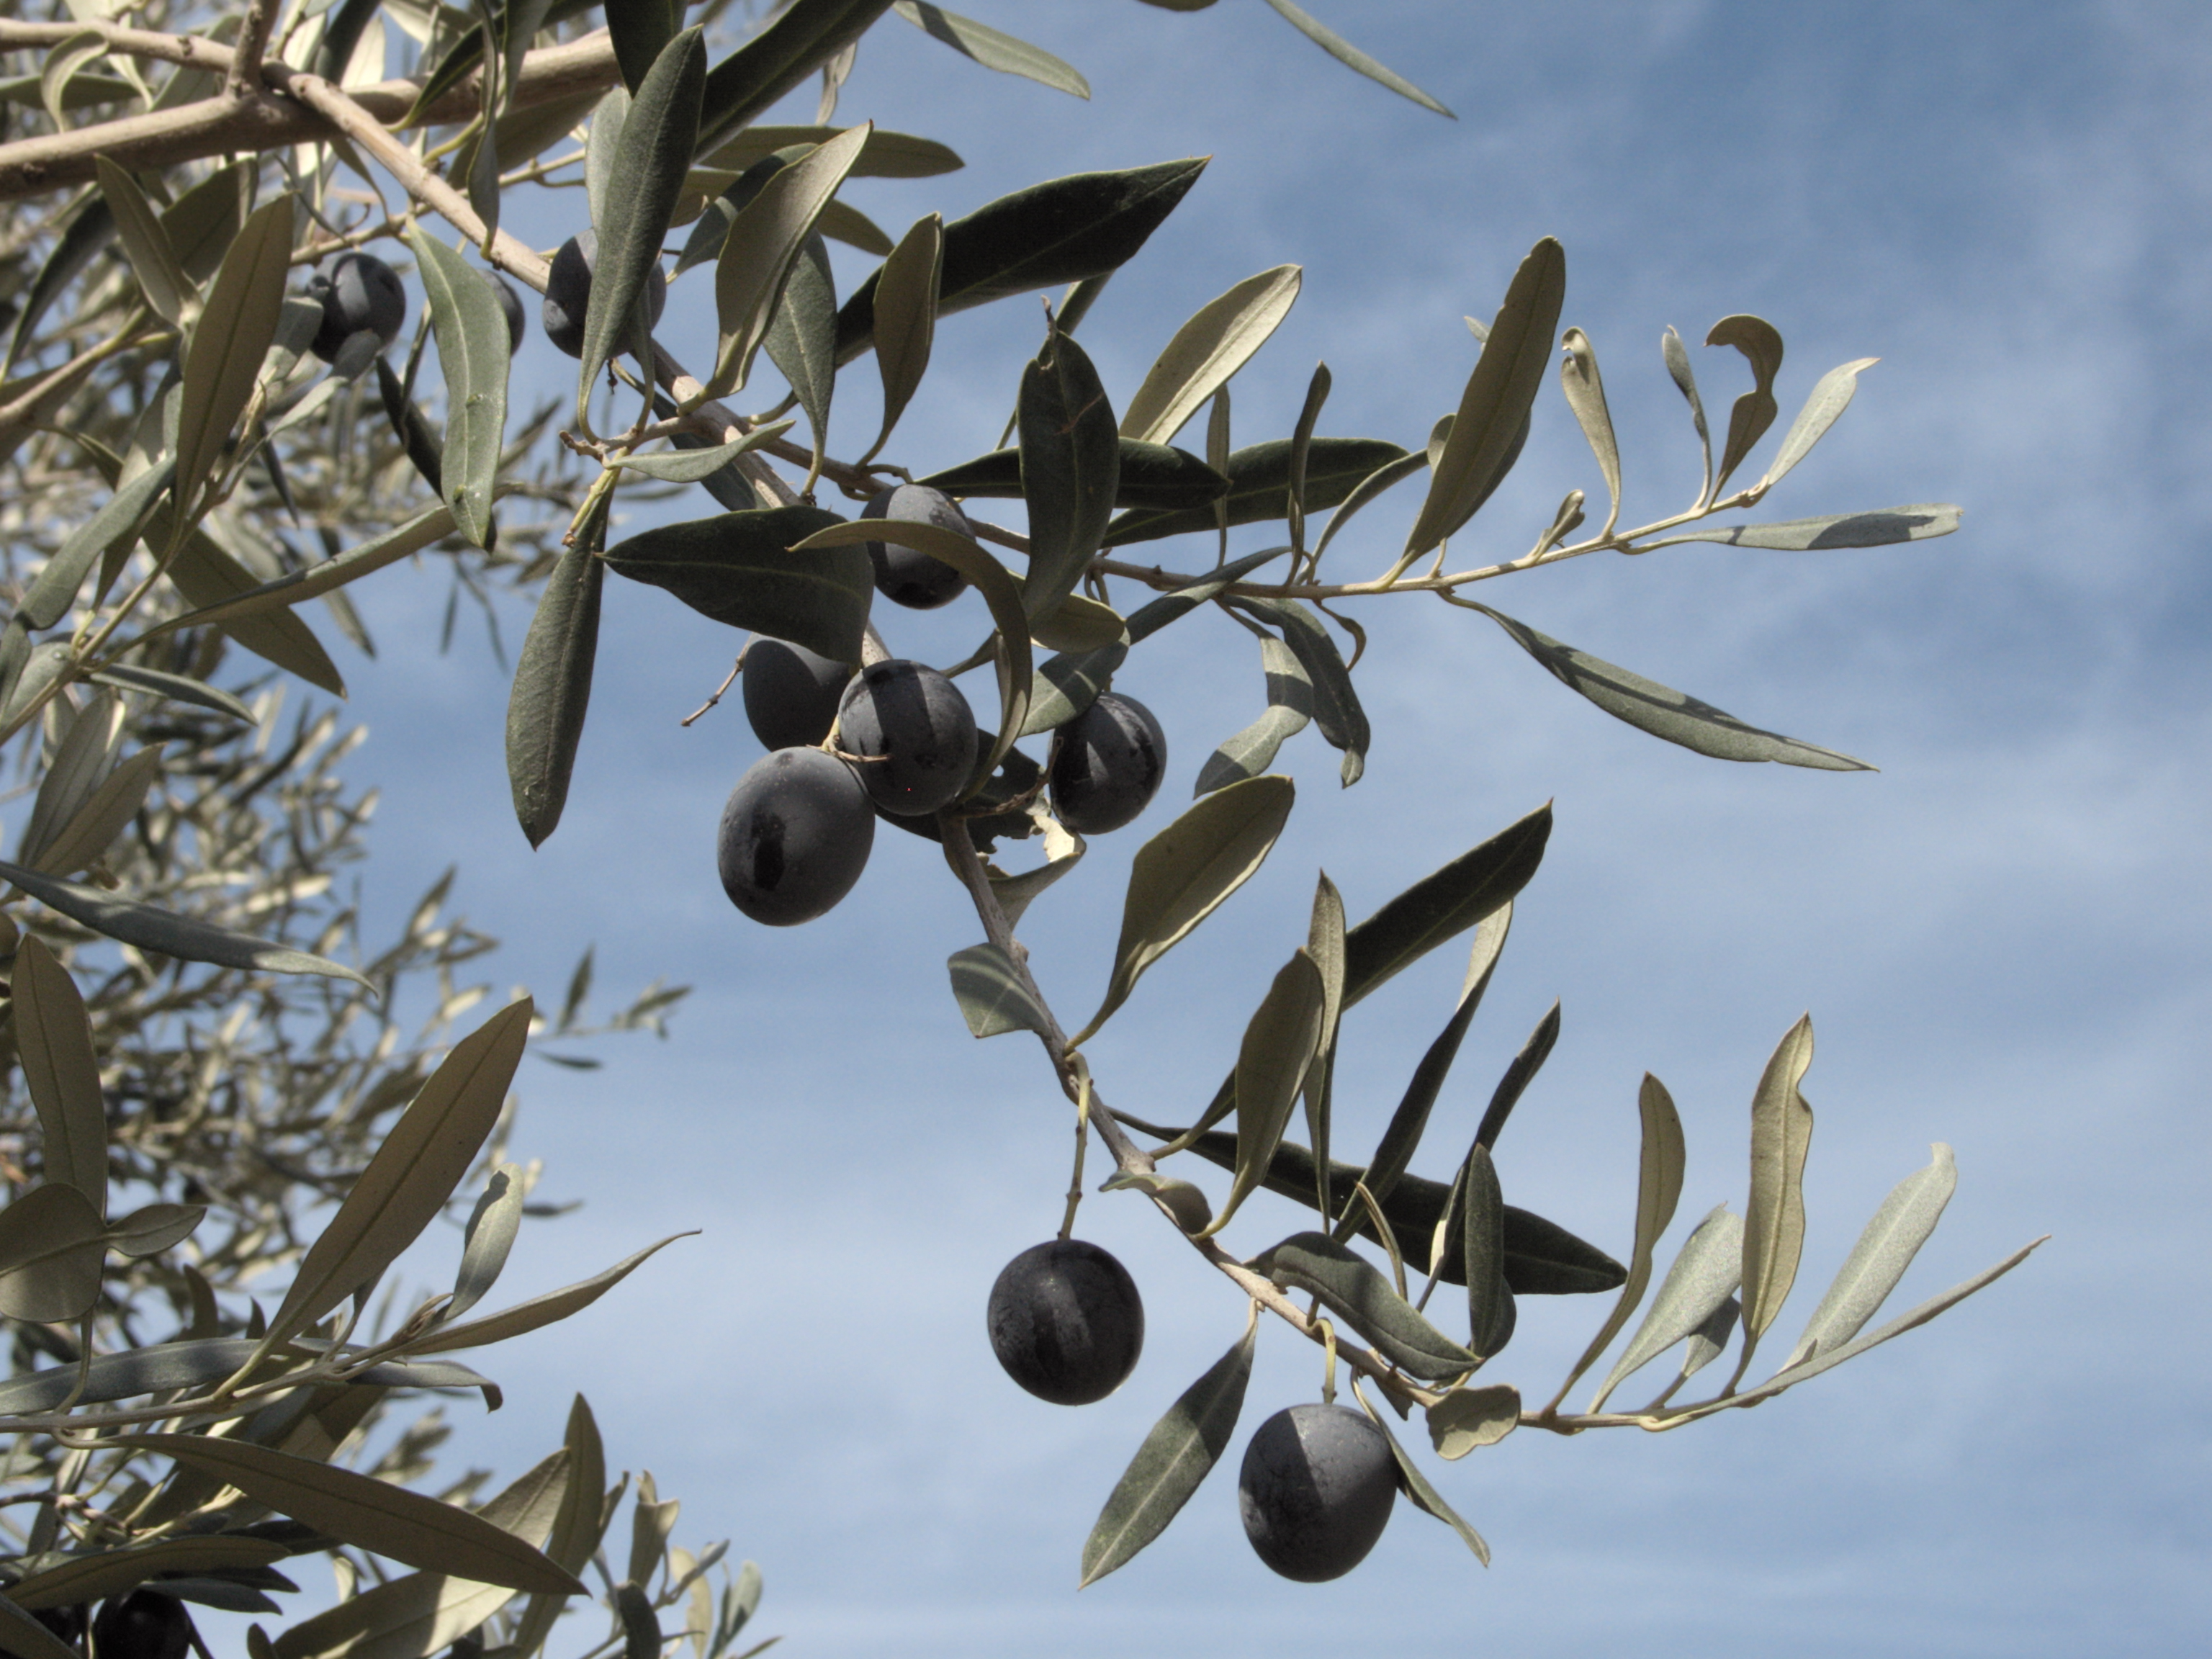 Серебряные кусты дикой маслины окруженные. Ветка оливы Греция. Маслины (или каперсы). Олива европейская в Греции дерево. Оливковое дерево (по-хорватски "маслина")..